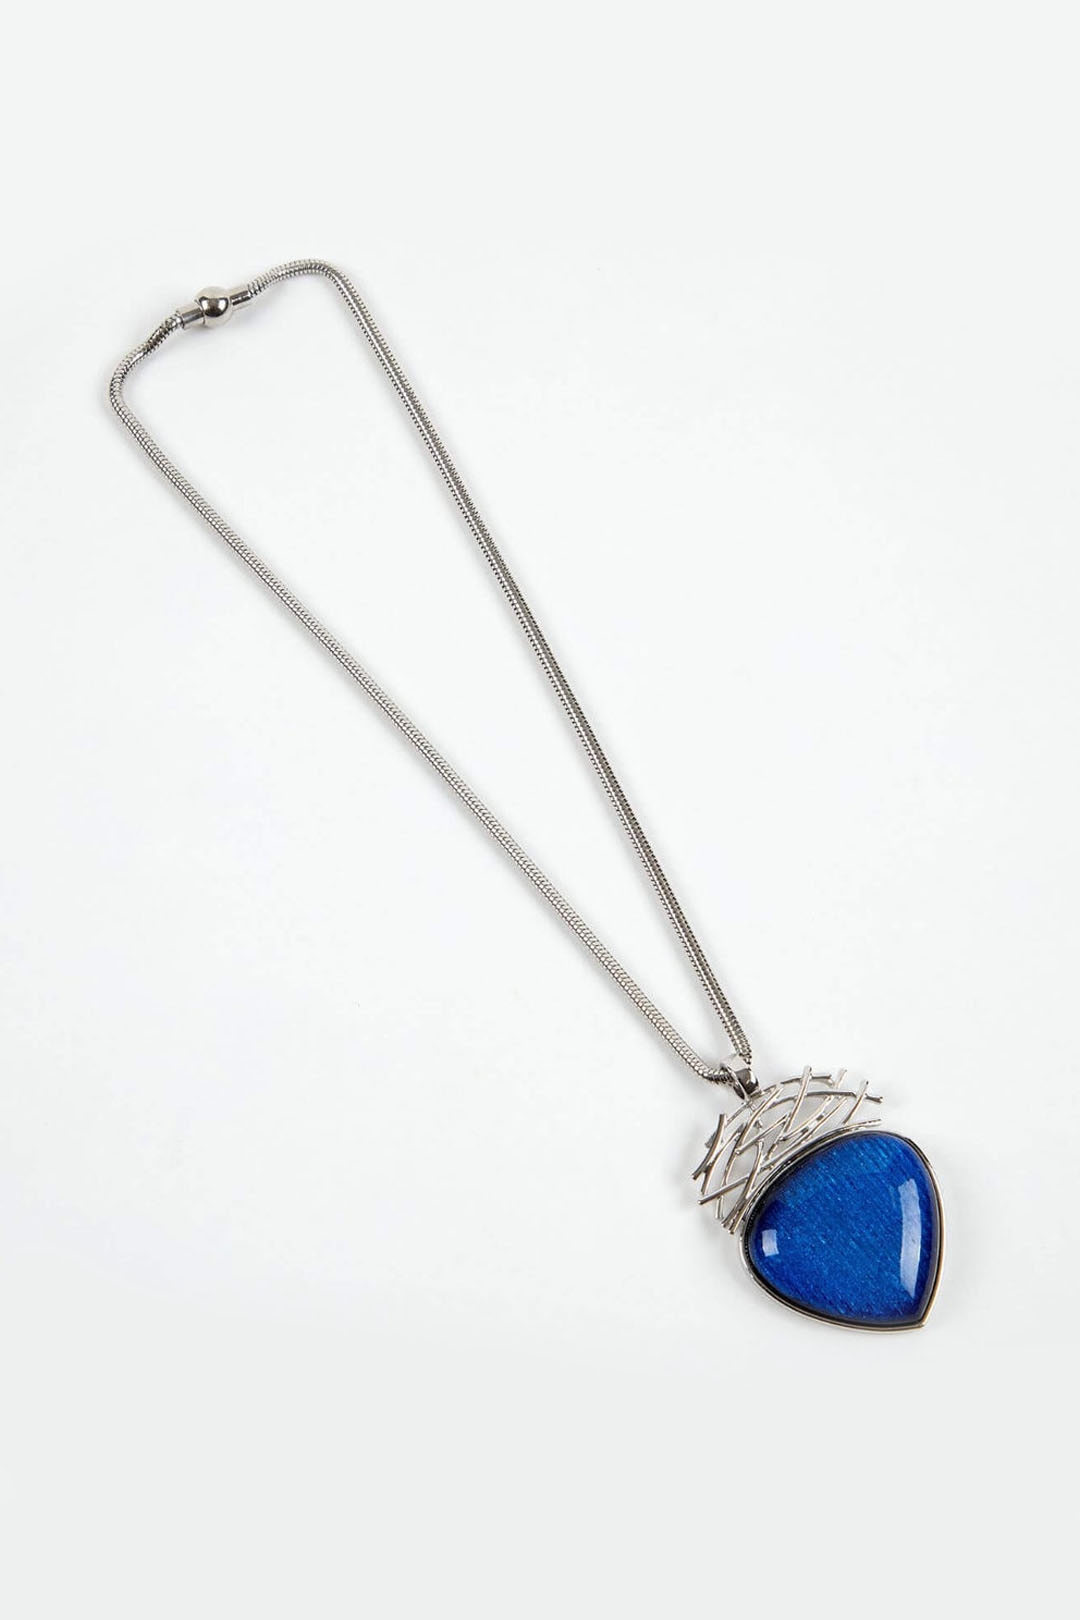 Dante NL48162 Cobalt Drop Silver Necklace